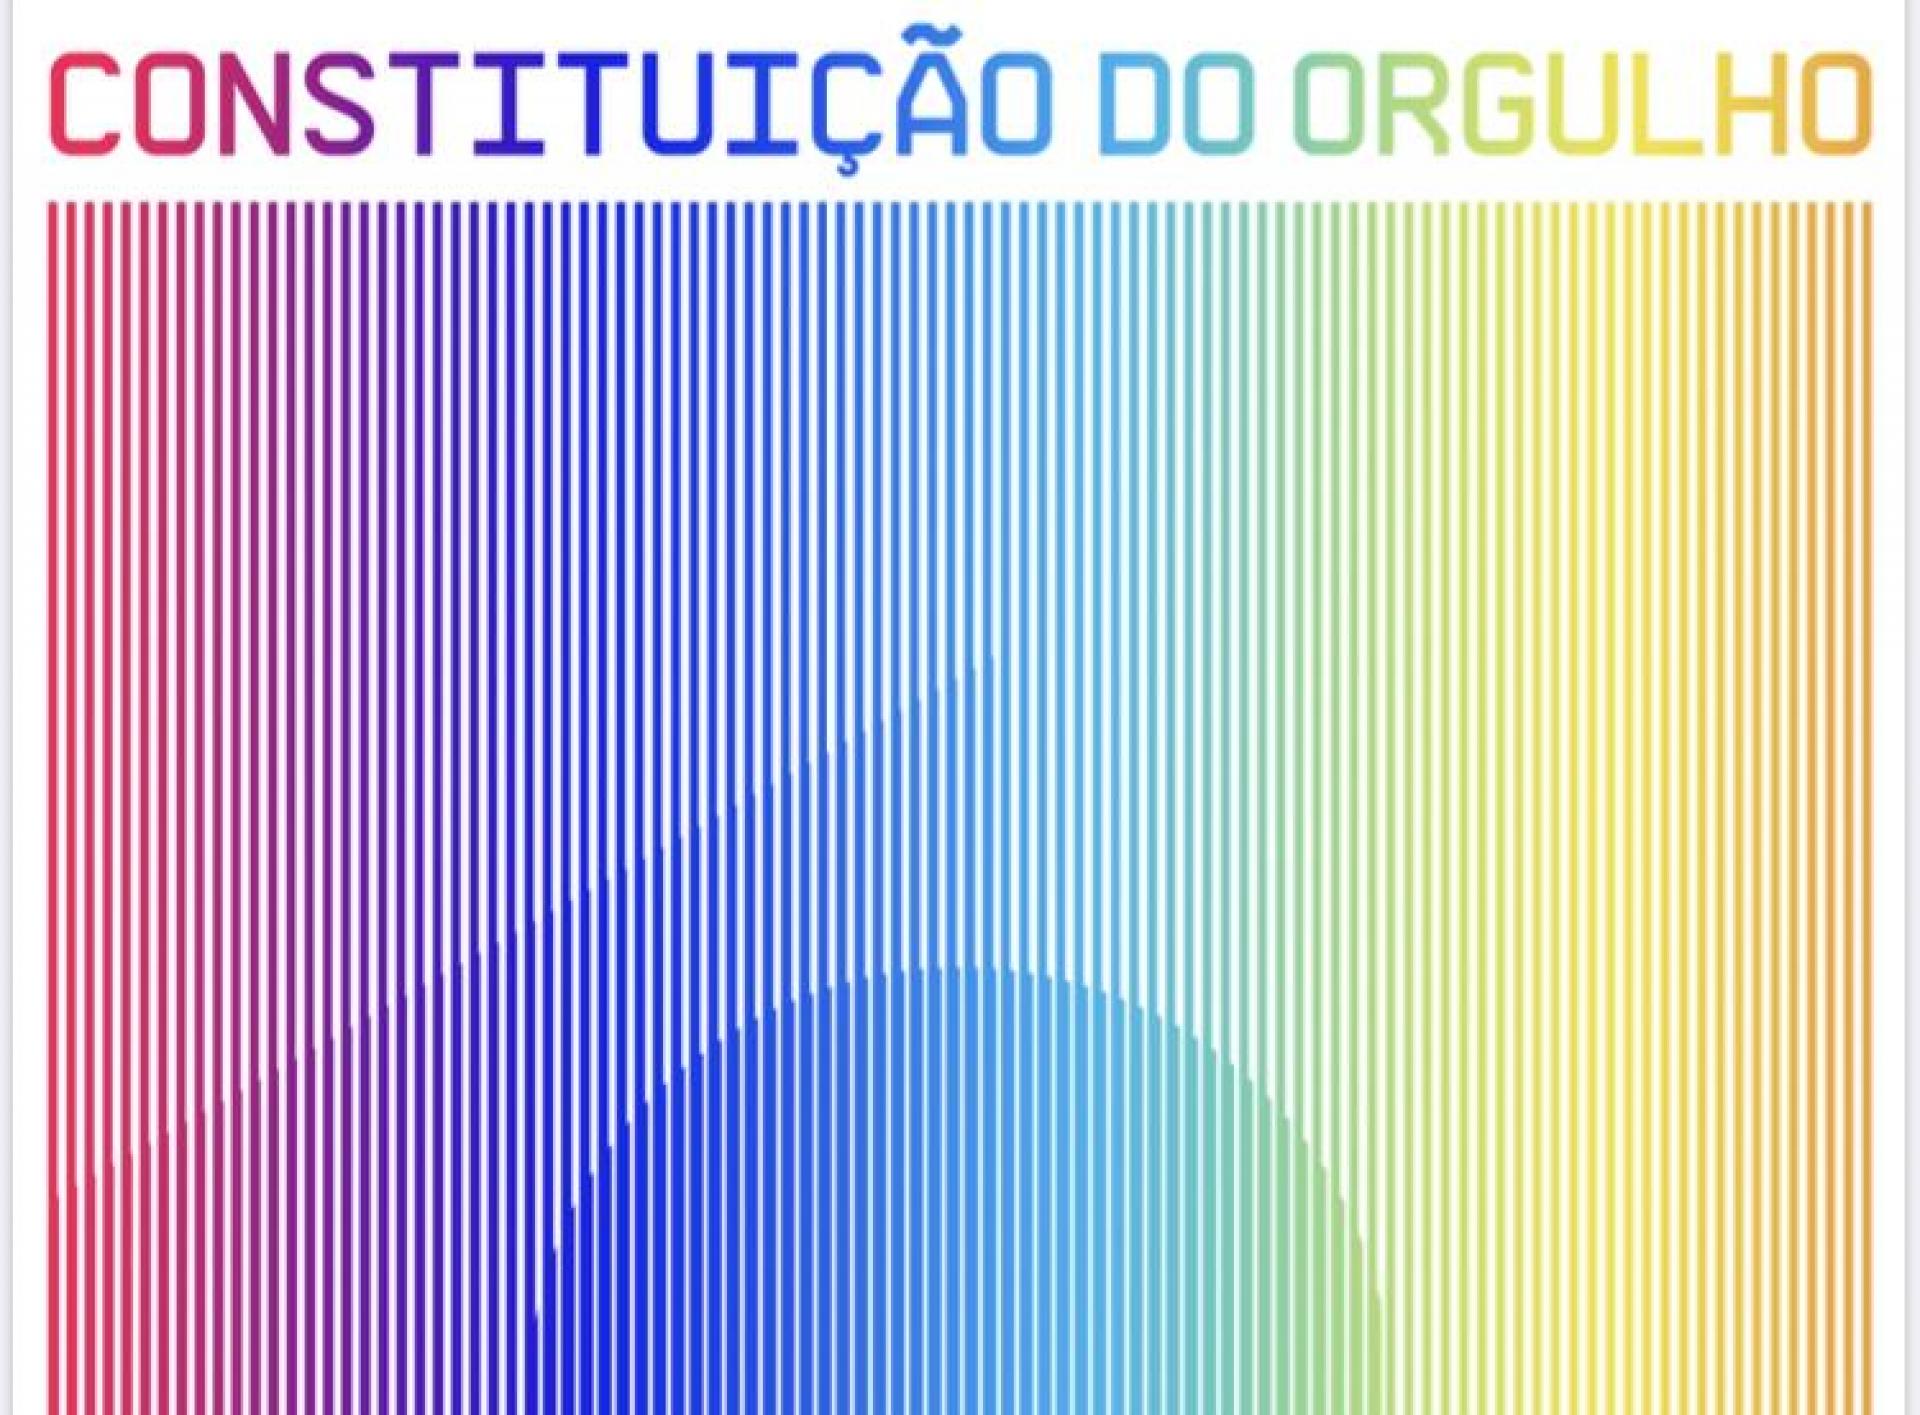 Cores do arco-íris transformam Constituição brasileira na Constituição do Orgulho